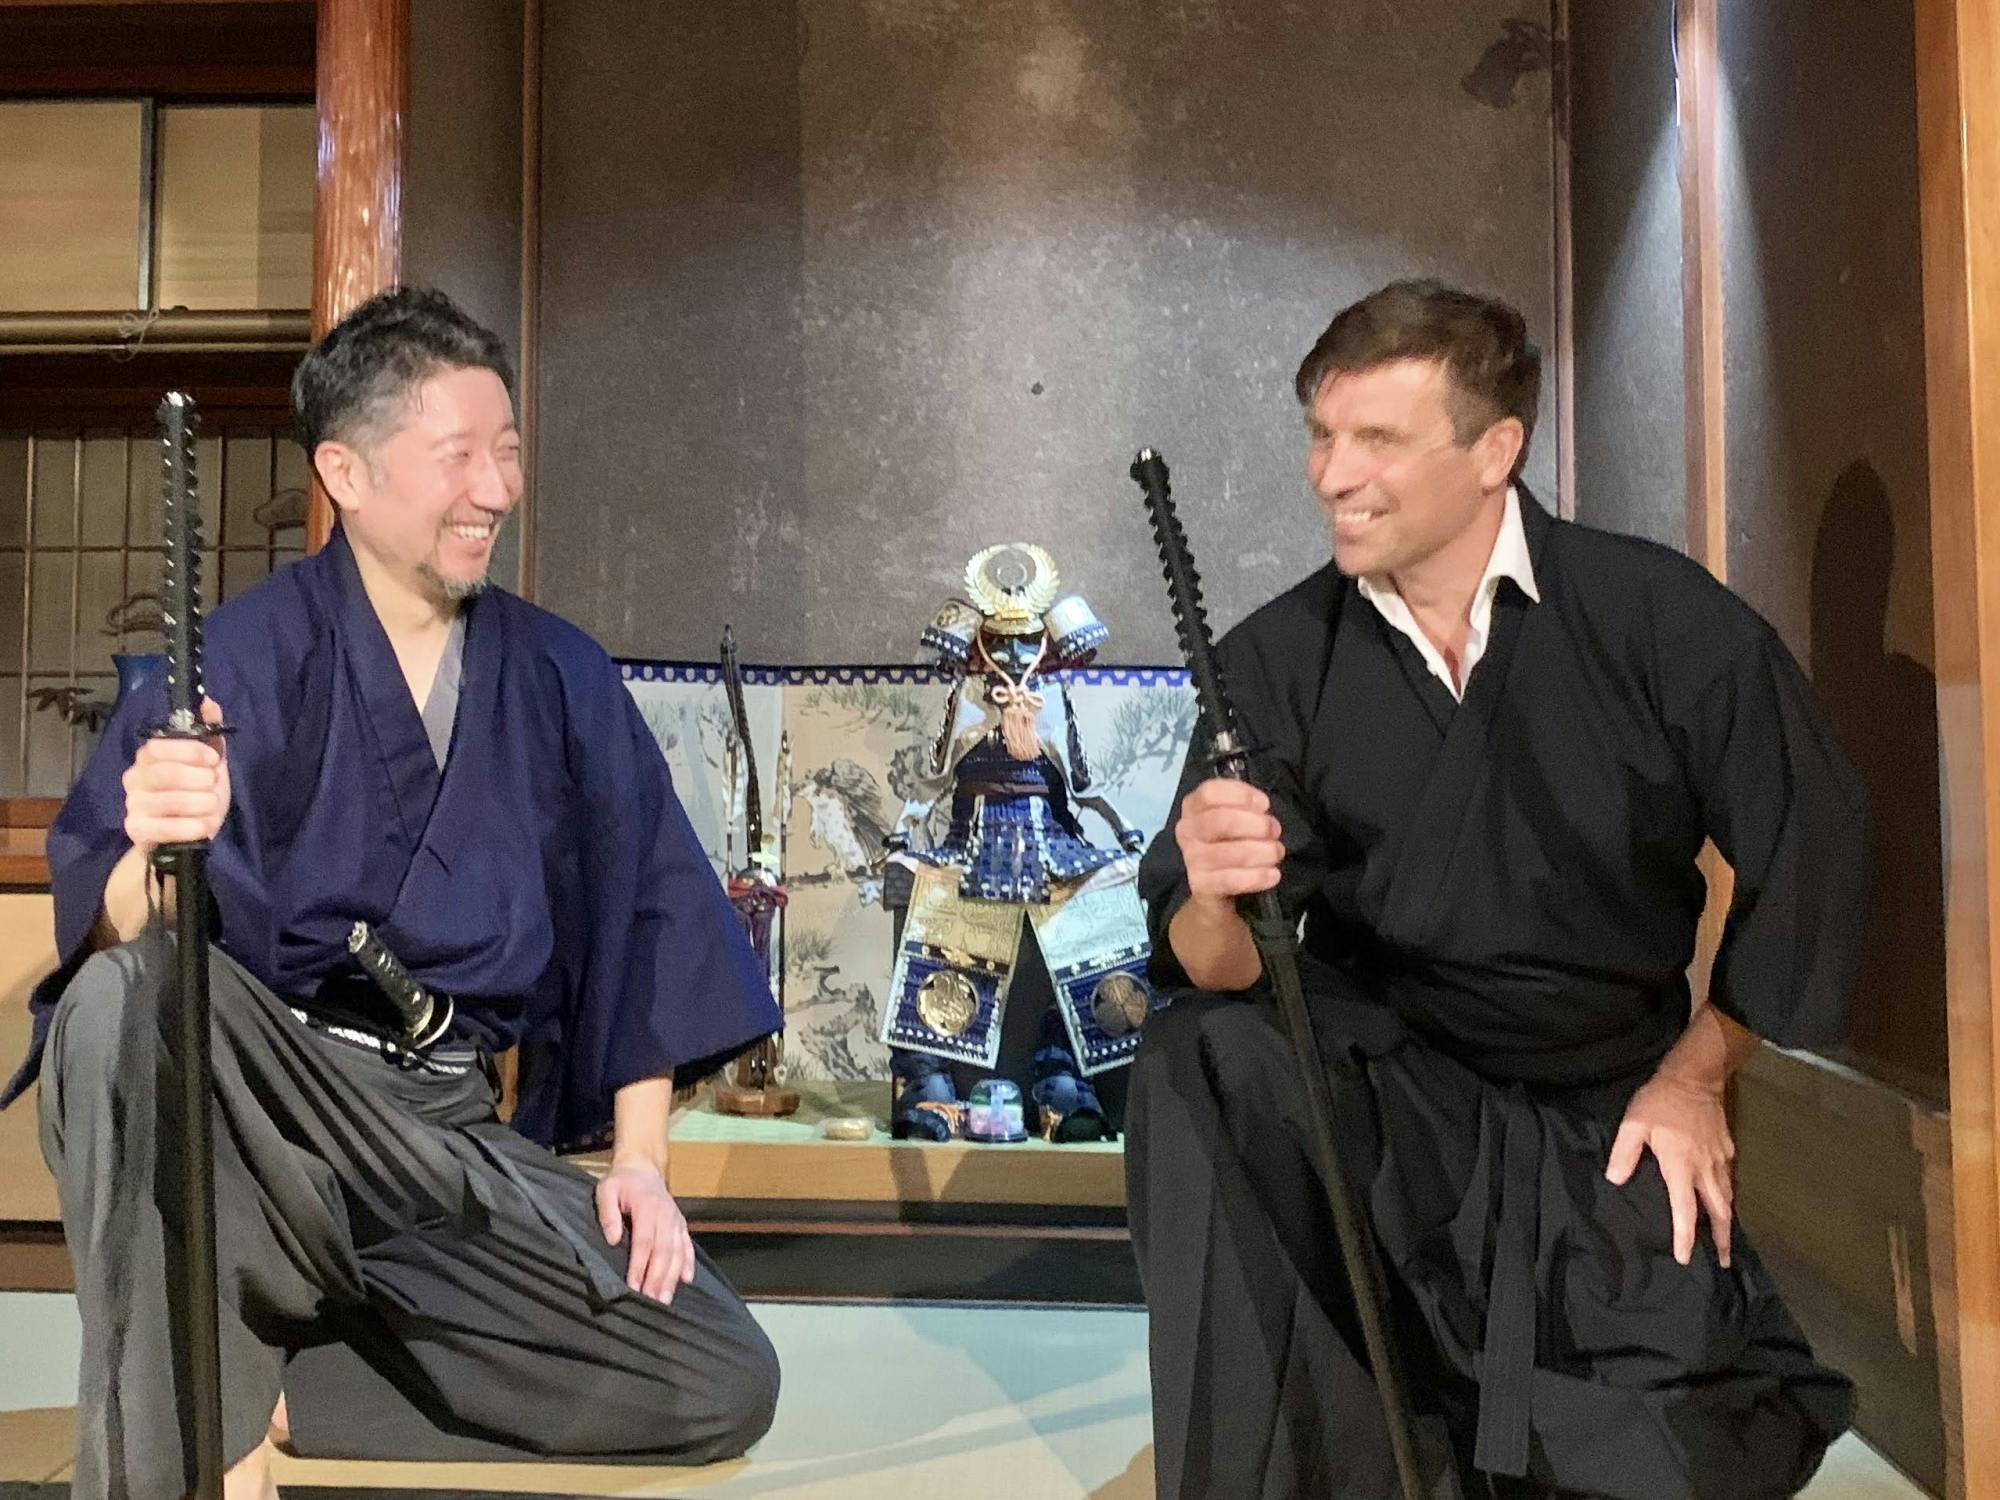 Visita guiada a Asakusa com show de drama Samurai e experiência Samurai